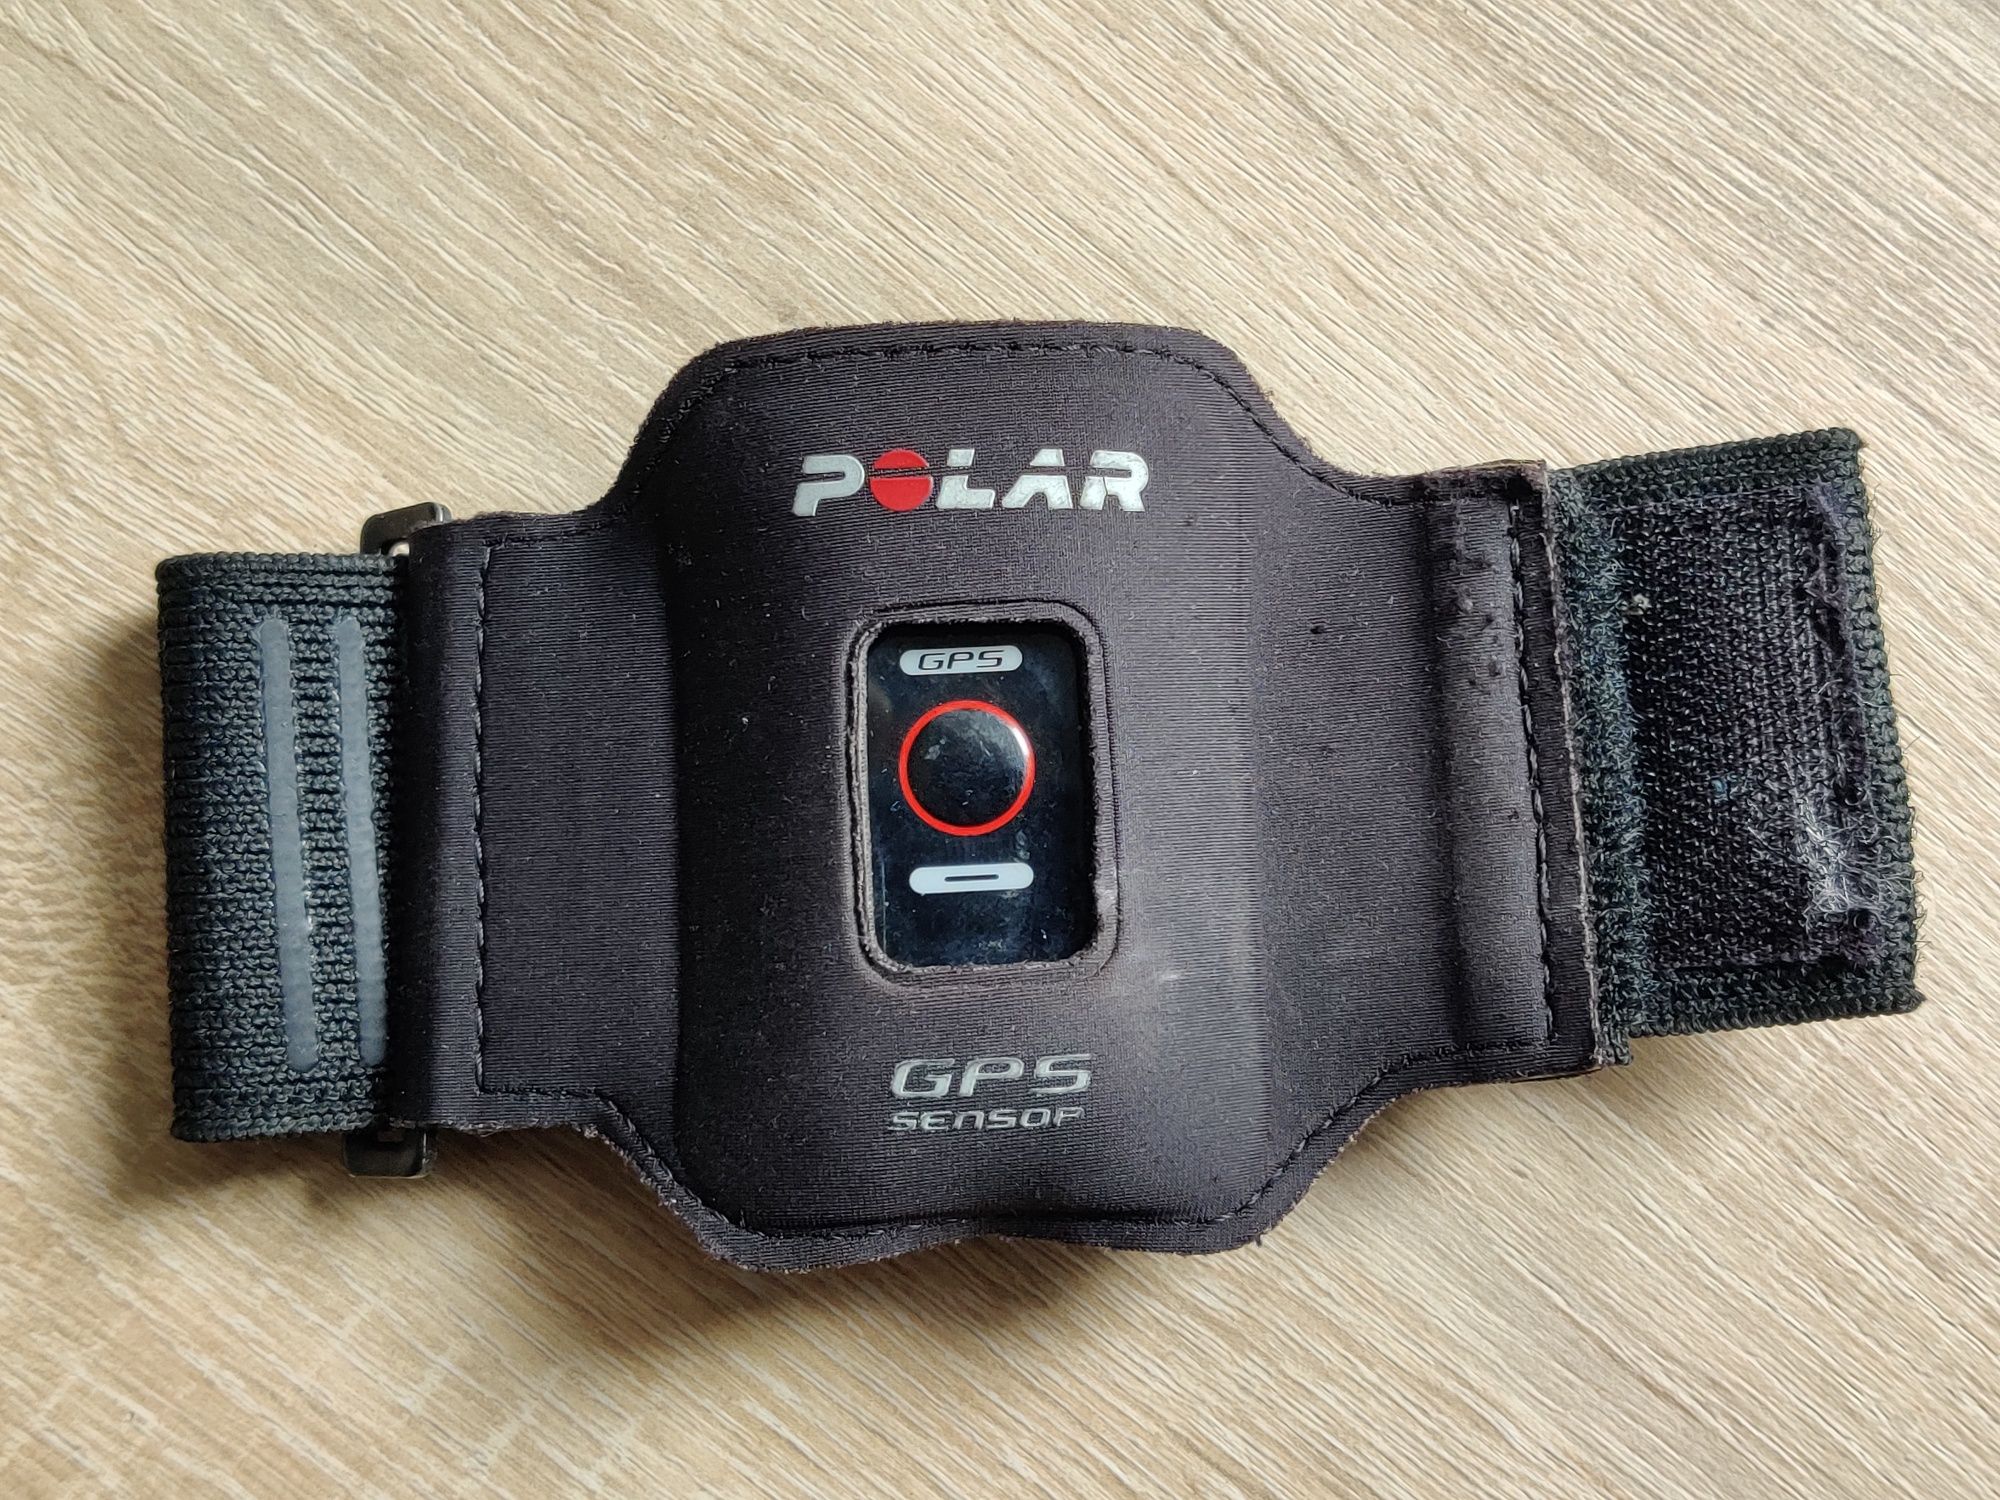 Senzor GPS Polar G5, plus arm band original